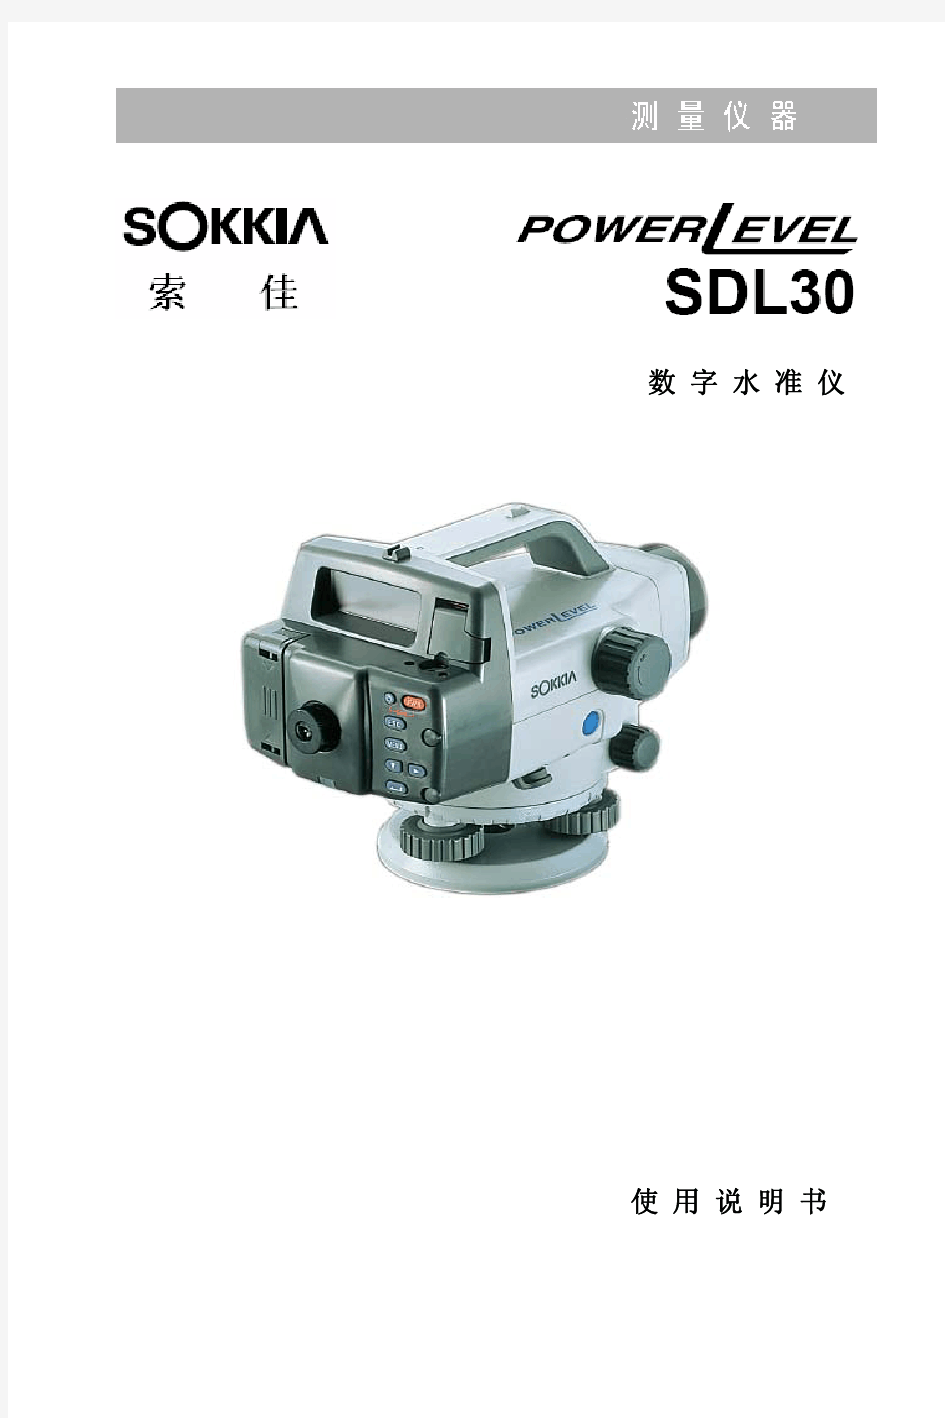 SDL30